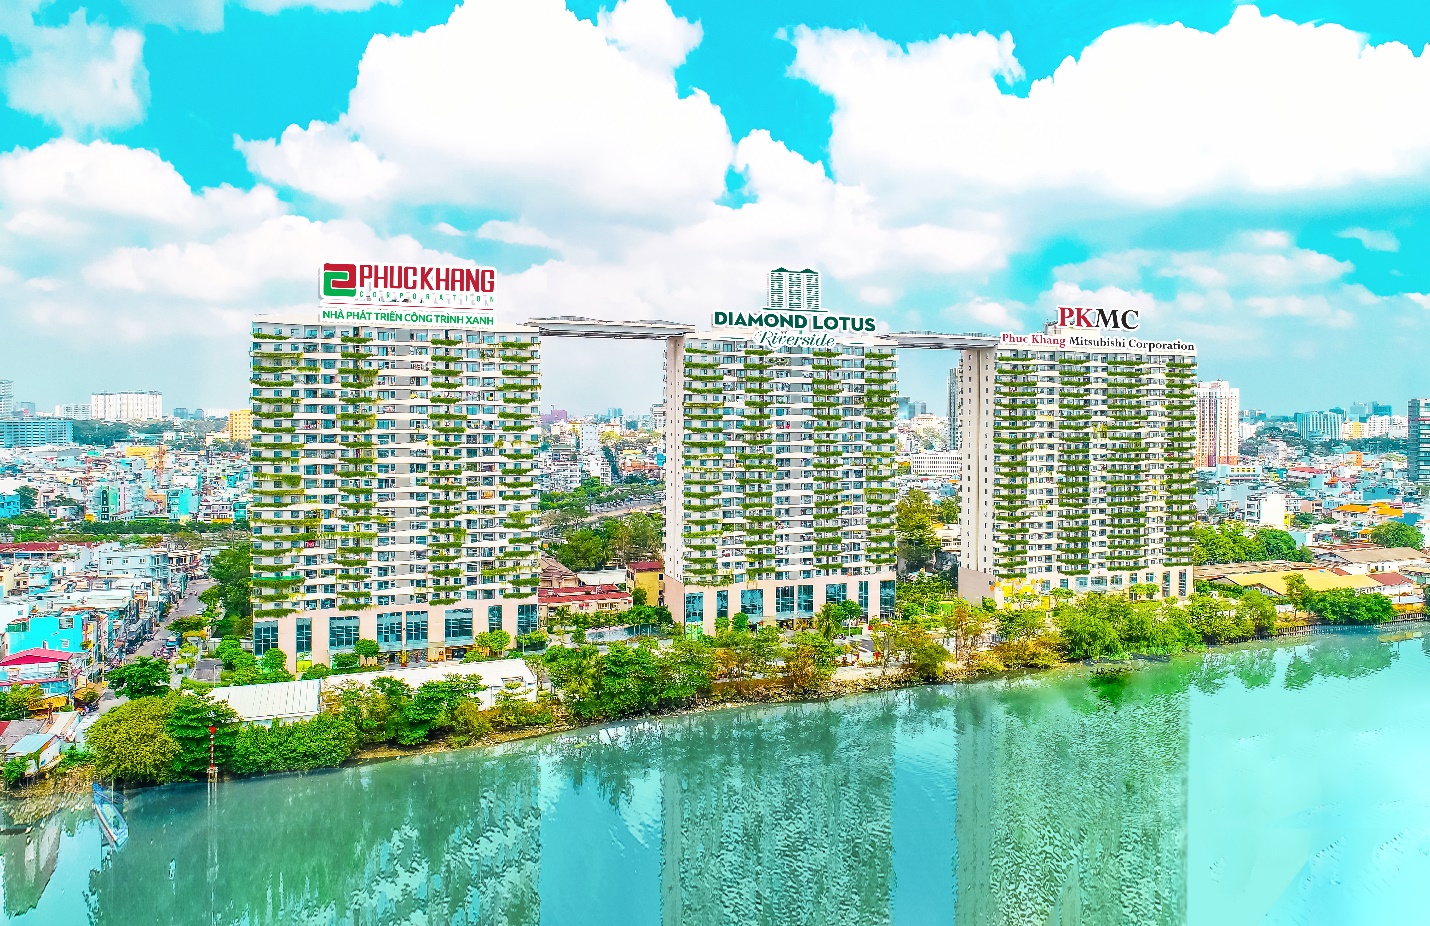 Chung cư Diamond Lotus Riverside – Công trình xanh cao cấp tiêu biểu được Phuc Khang Corporation đầu tư phát triển tại TP.HCM